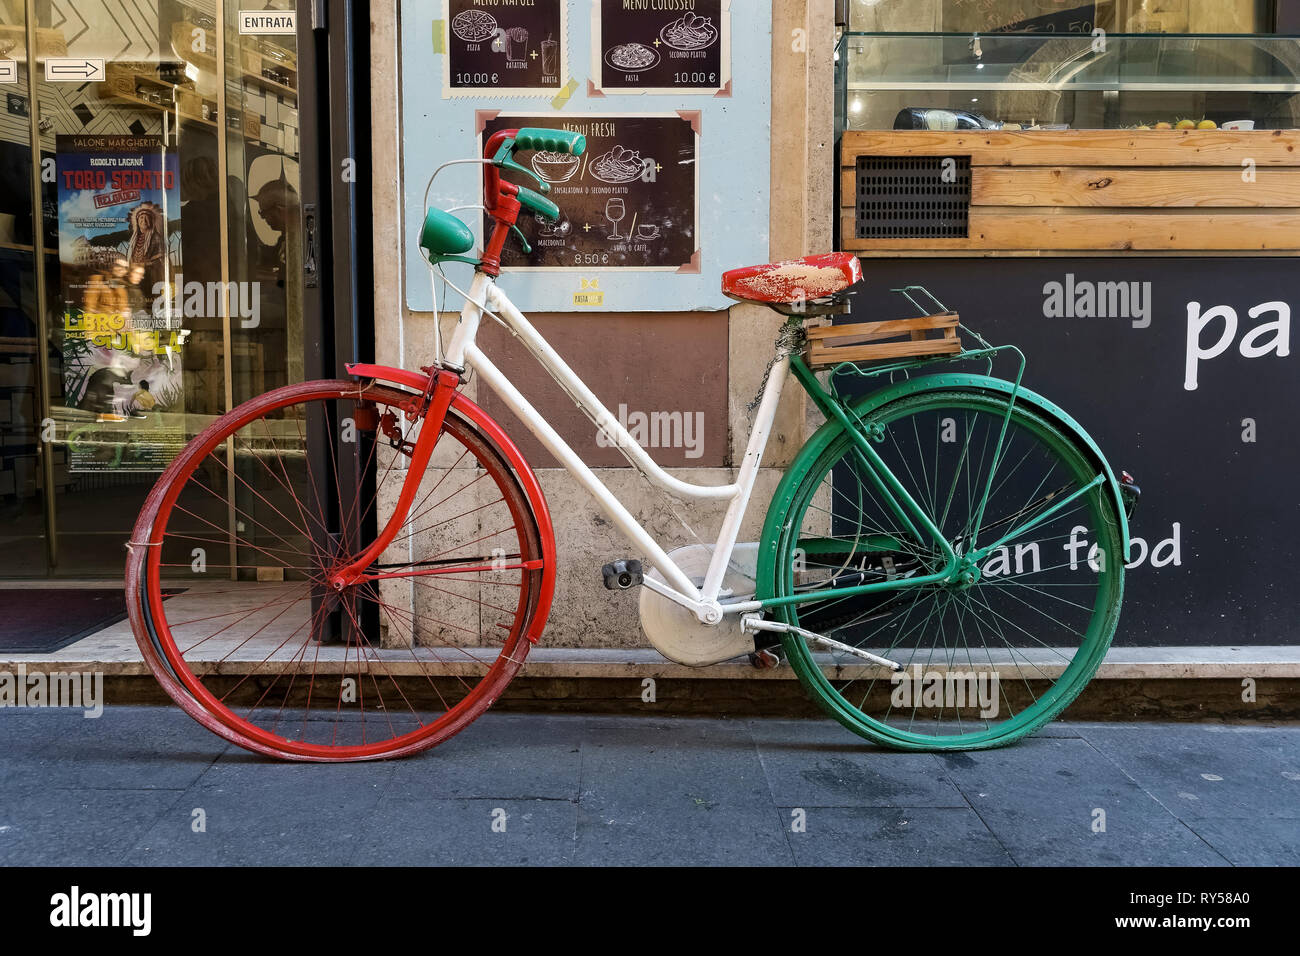 Vélo tricolore italien stationné devant un restaurant. Rome, Italie, Europe, Union européenne, UE. Banque D'Images